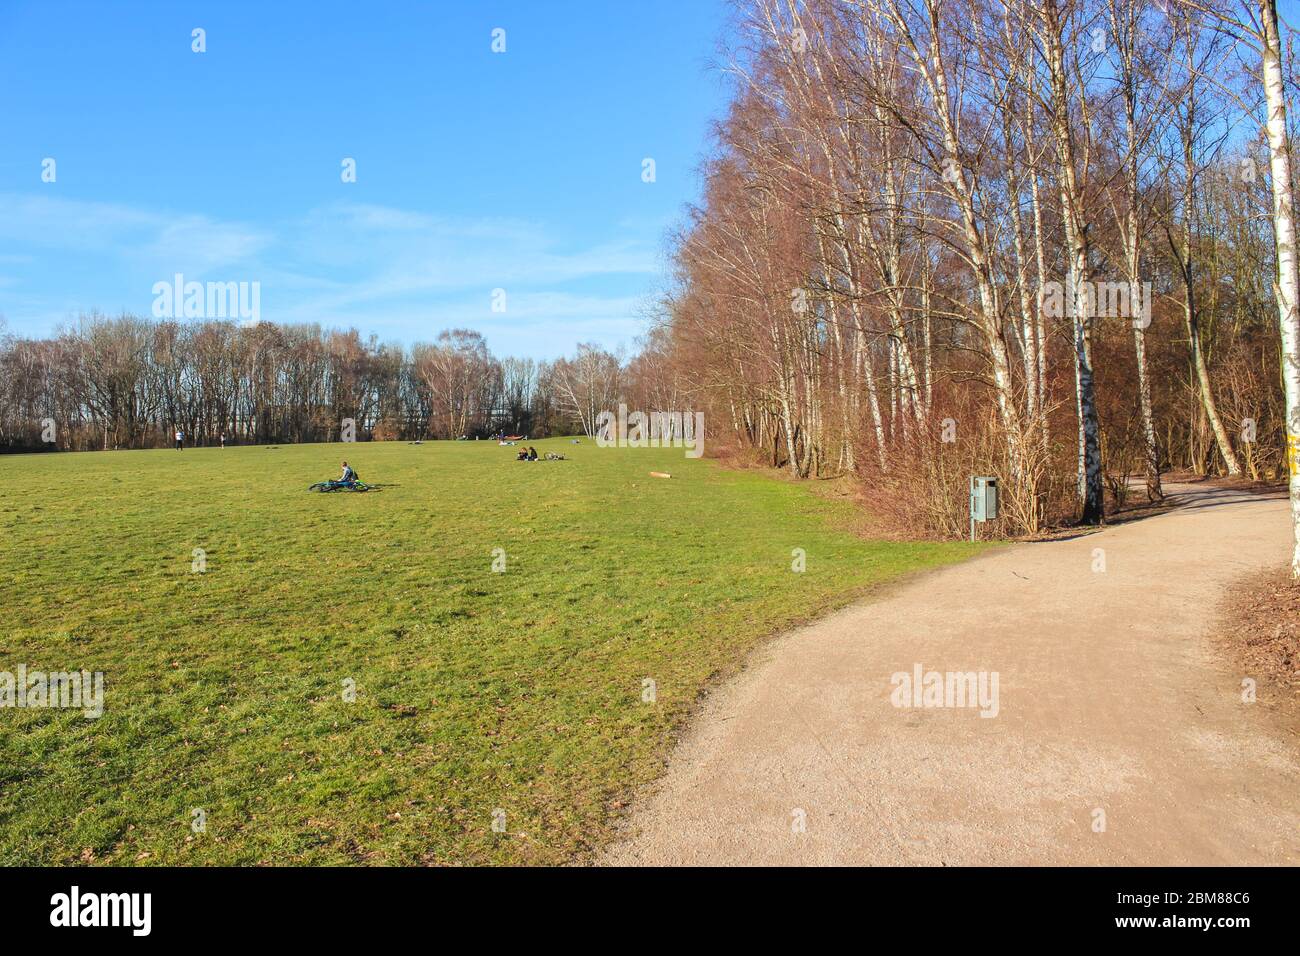 Tremoniapark à Dortmund, Rhénanie-du-Nord-Westphalie, Allemagne. Parc de la ville photographié par une journée ensoleillée en automne. Arbre sans feuilles, personnes en arrière-plan lointain. Parc de Tremonia. Banque D'Images